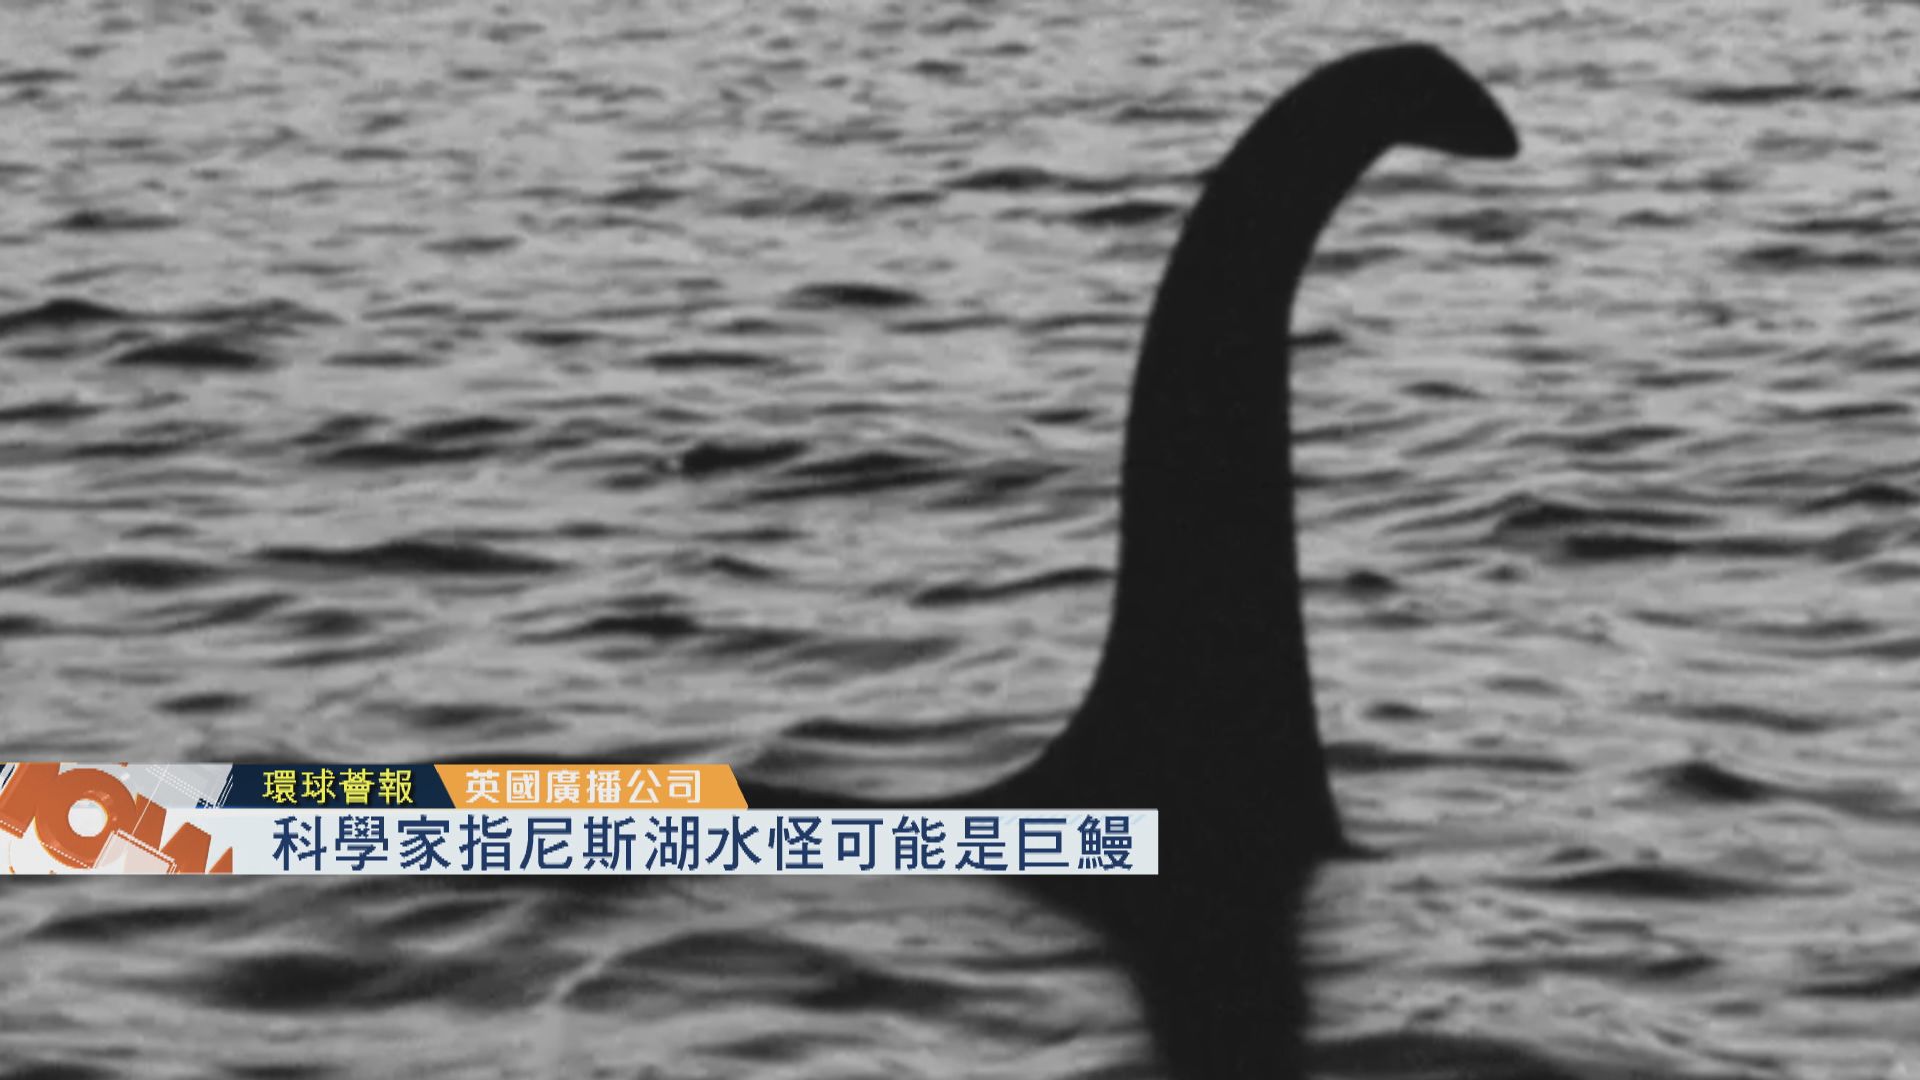 【環球薈報】科學家指尼斯湖水怪可能是巨鰻